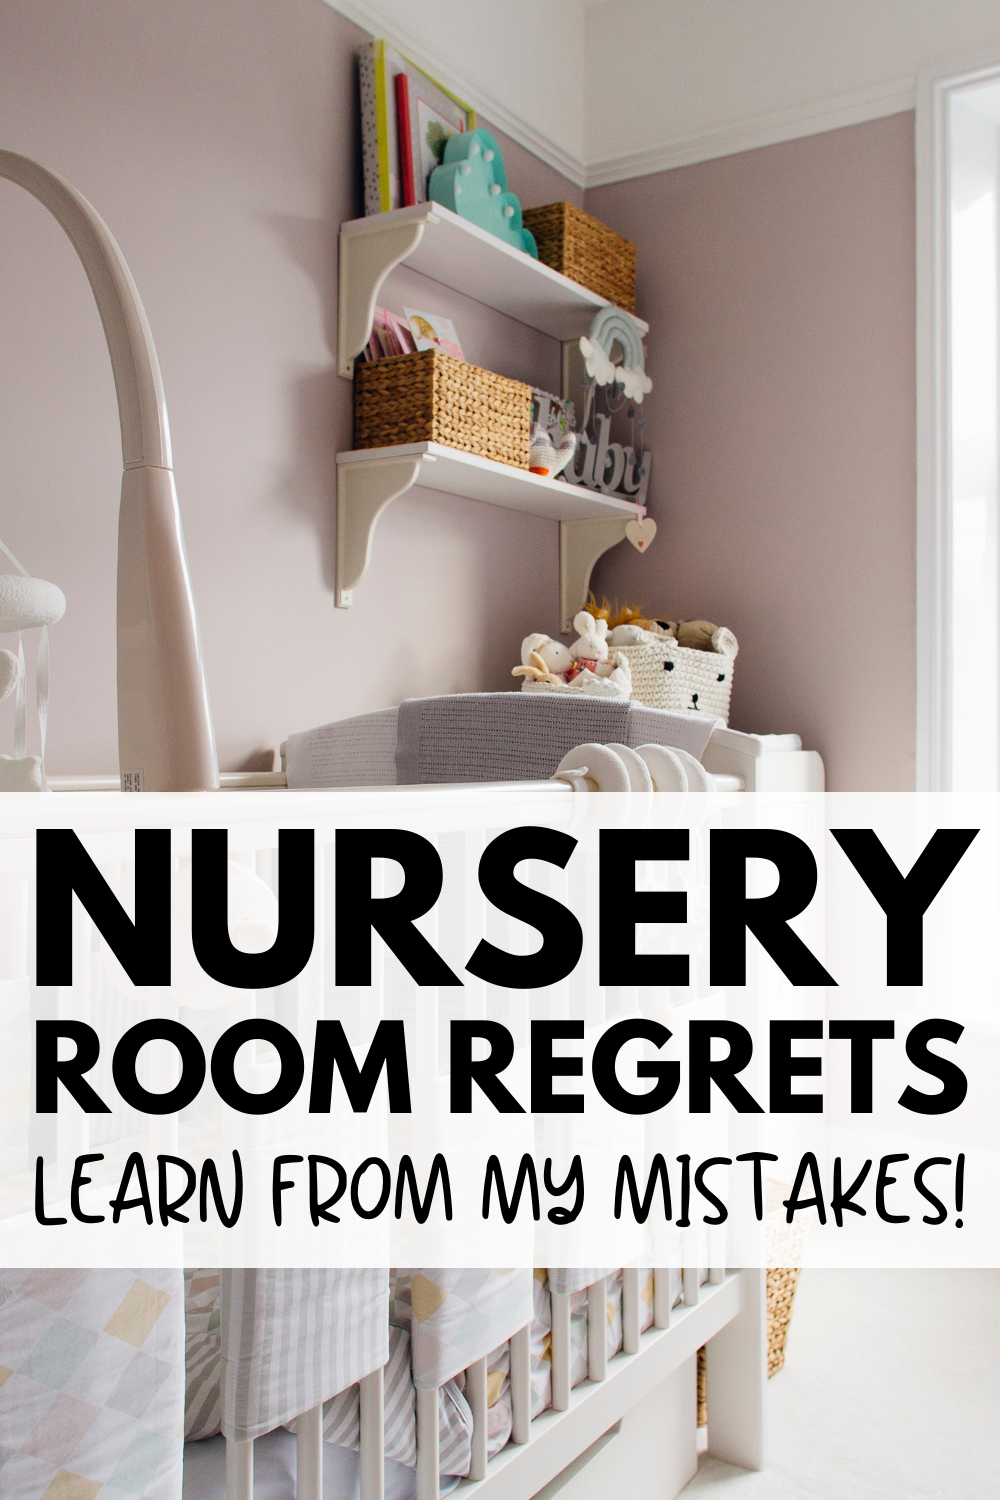 Nursery Room Regrets